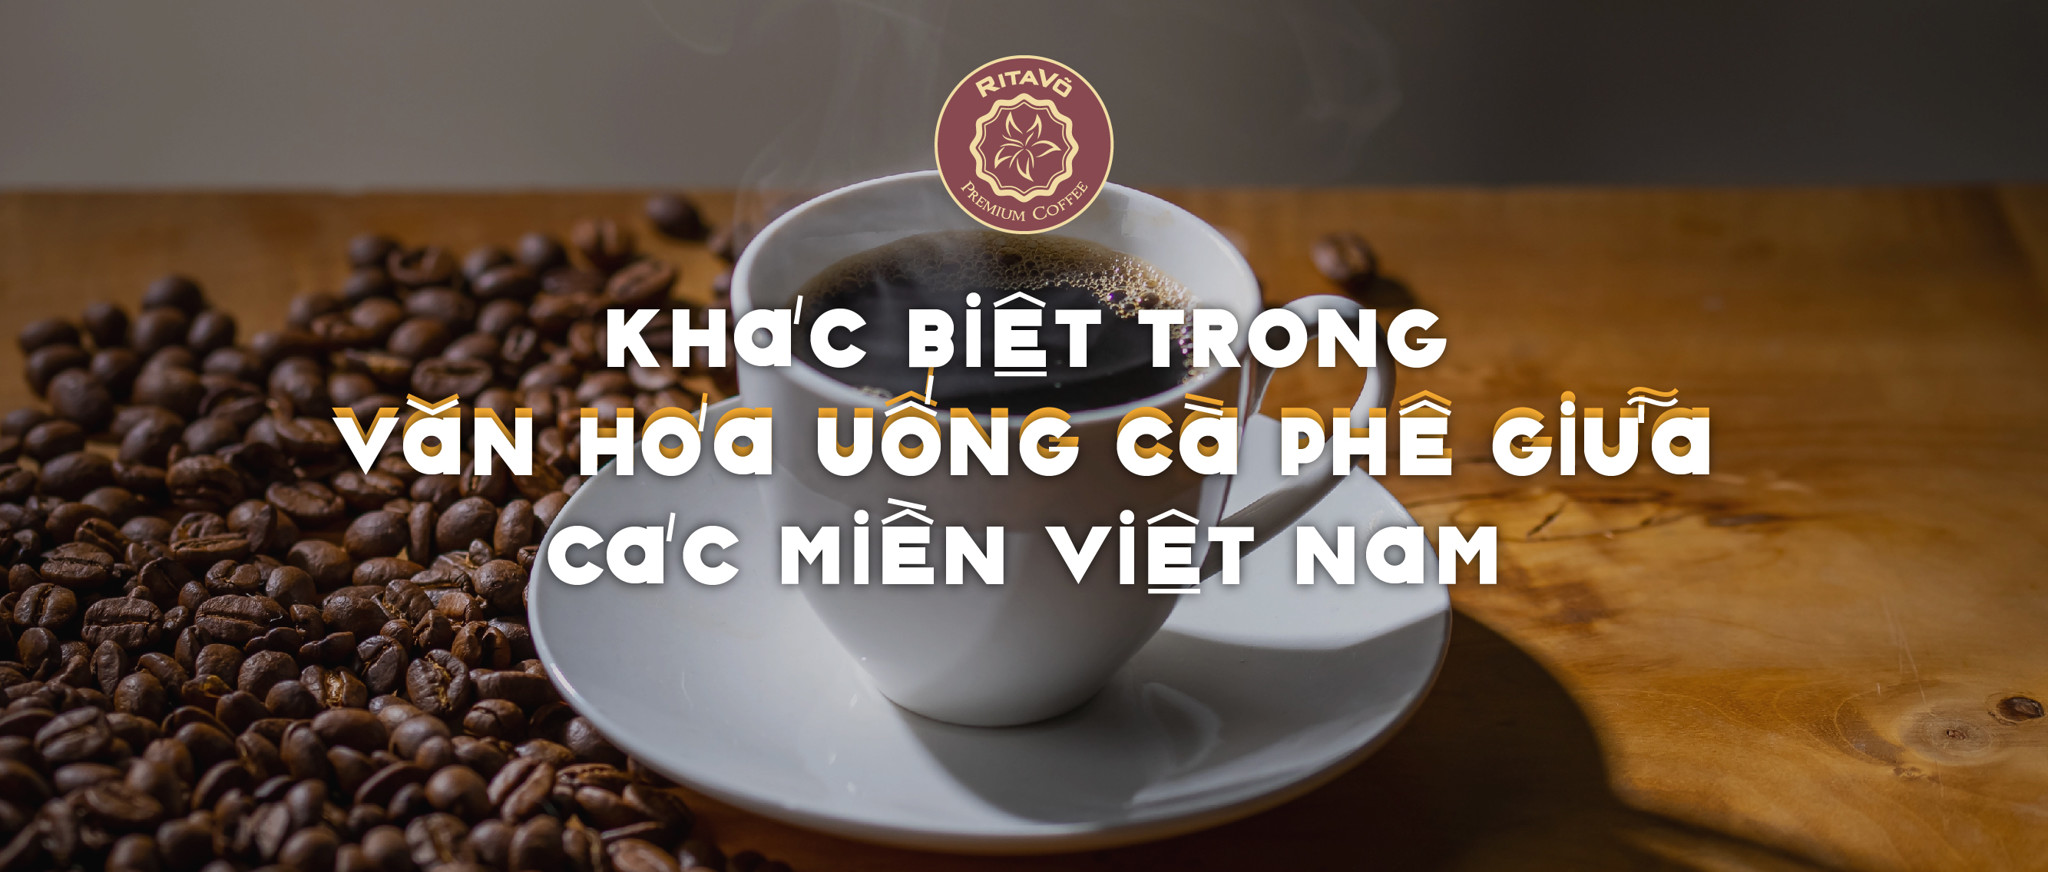 Khác biệt trong văn hóa uống cà phê giữa các miền Việt Nam